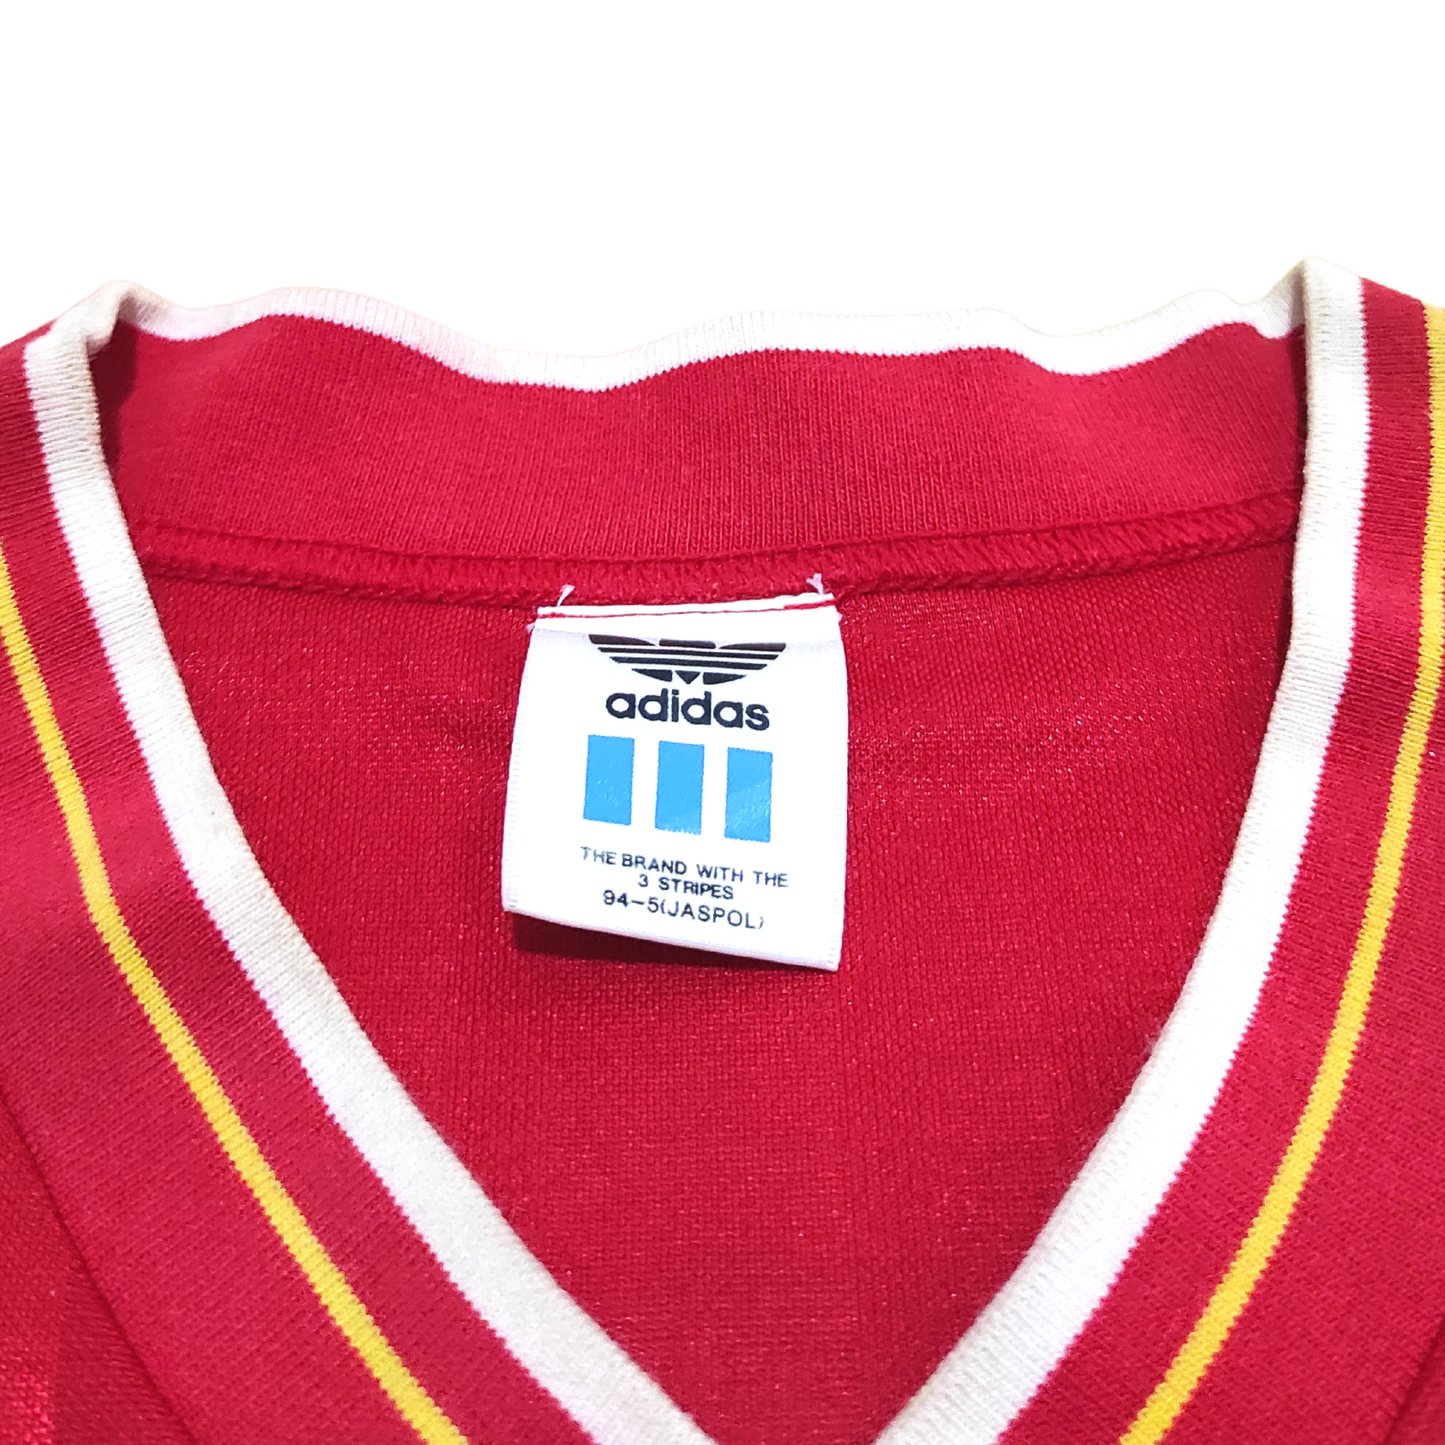 Liverpool Home L/S Shirt 1985-1987 #7 Daglish (L)